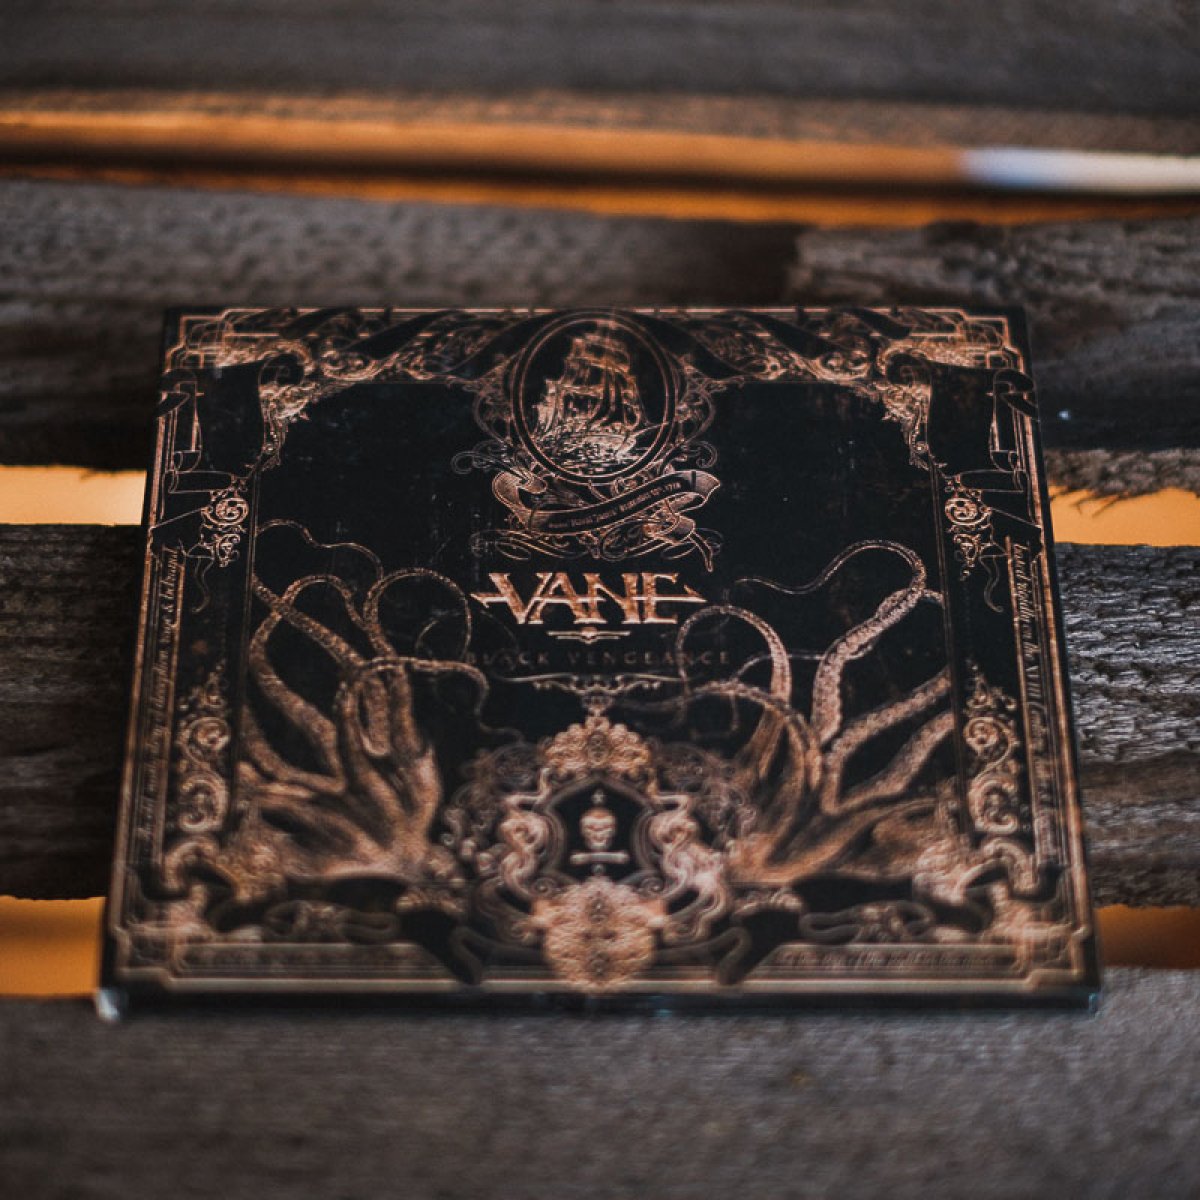 VANE - BLACK VENGEANCE CD